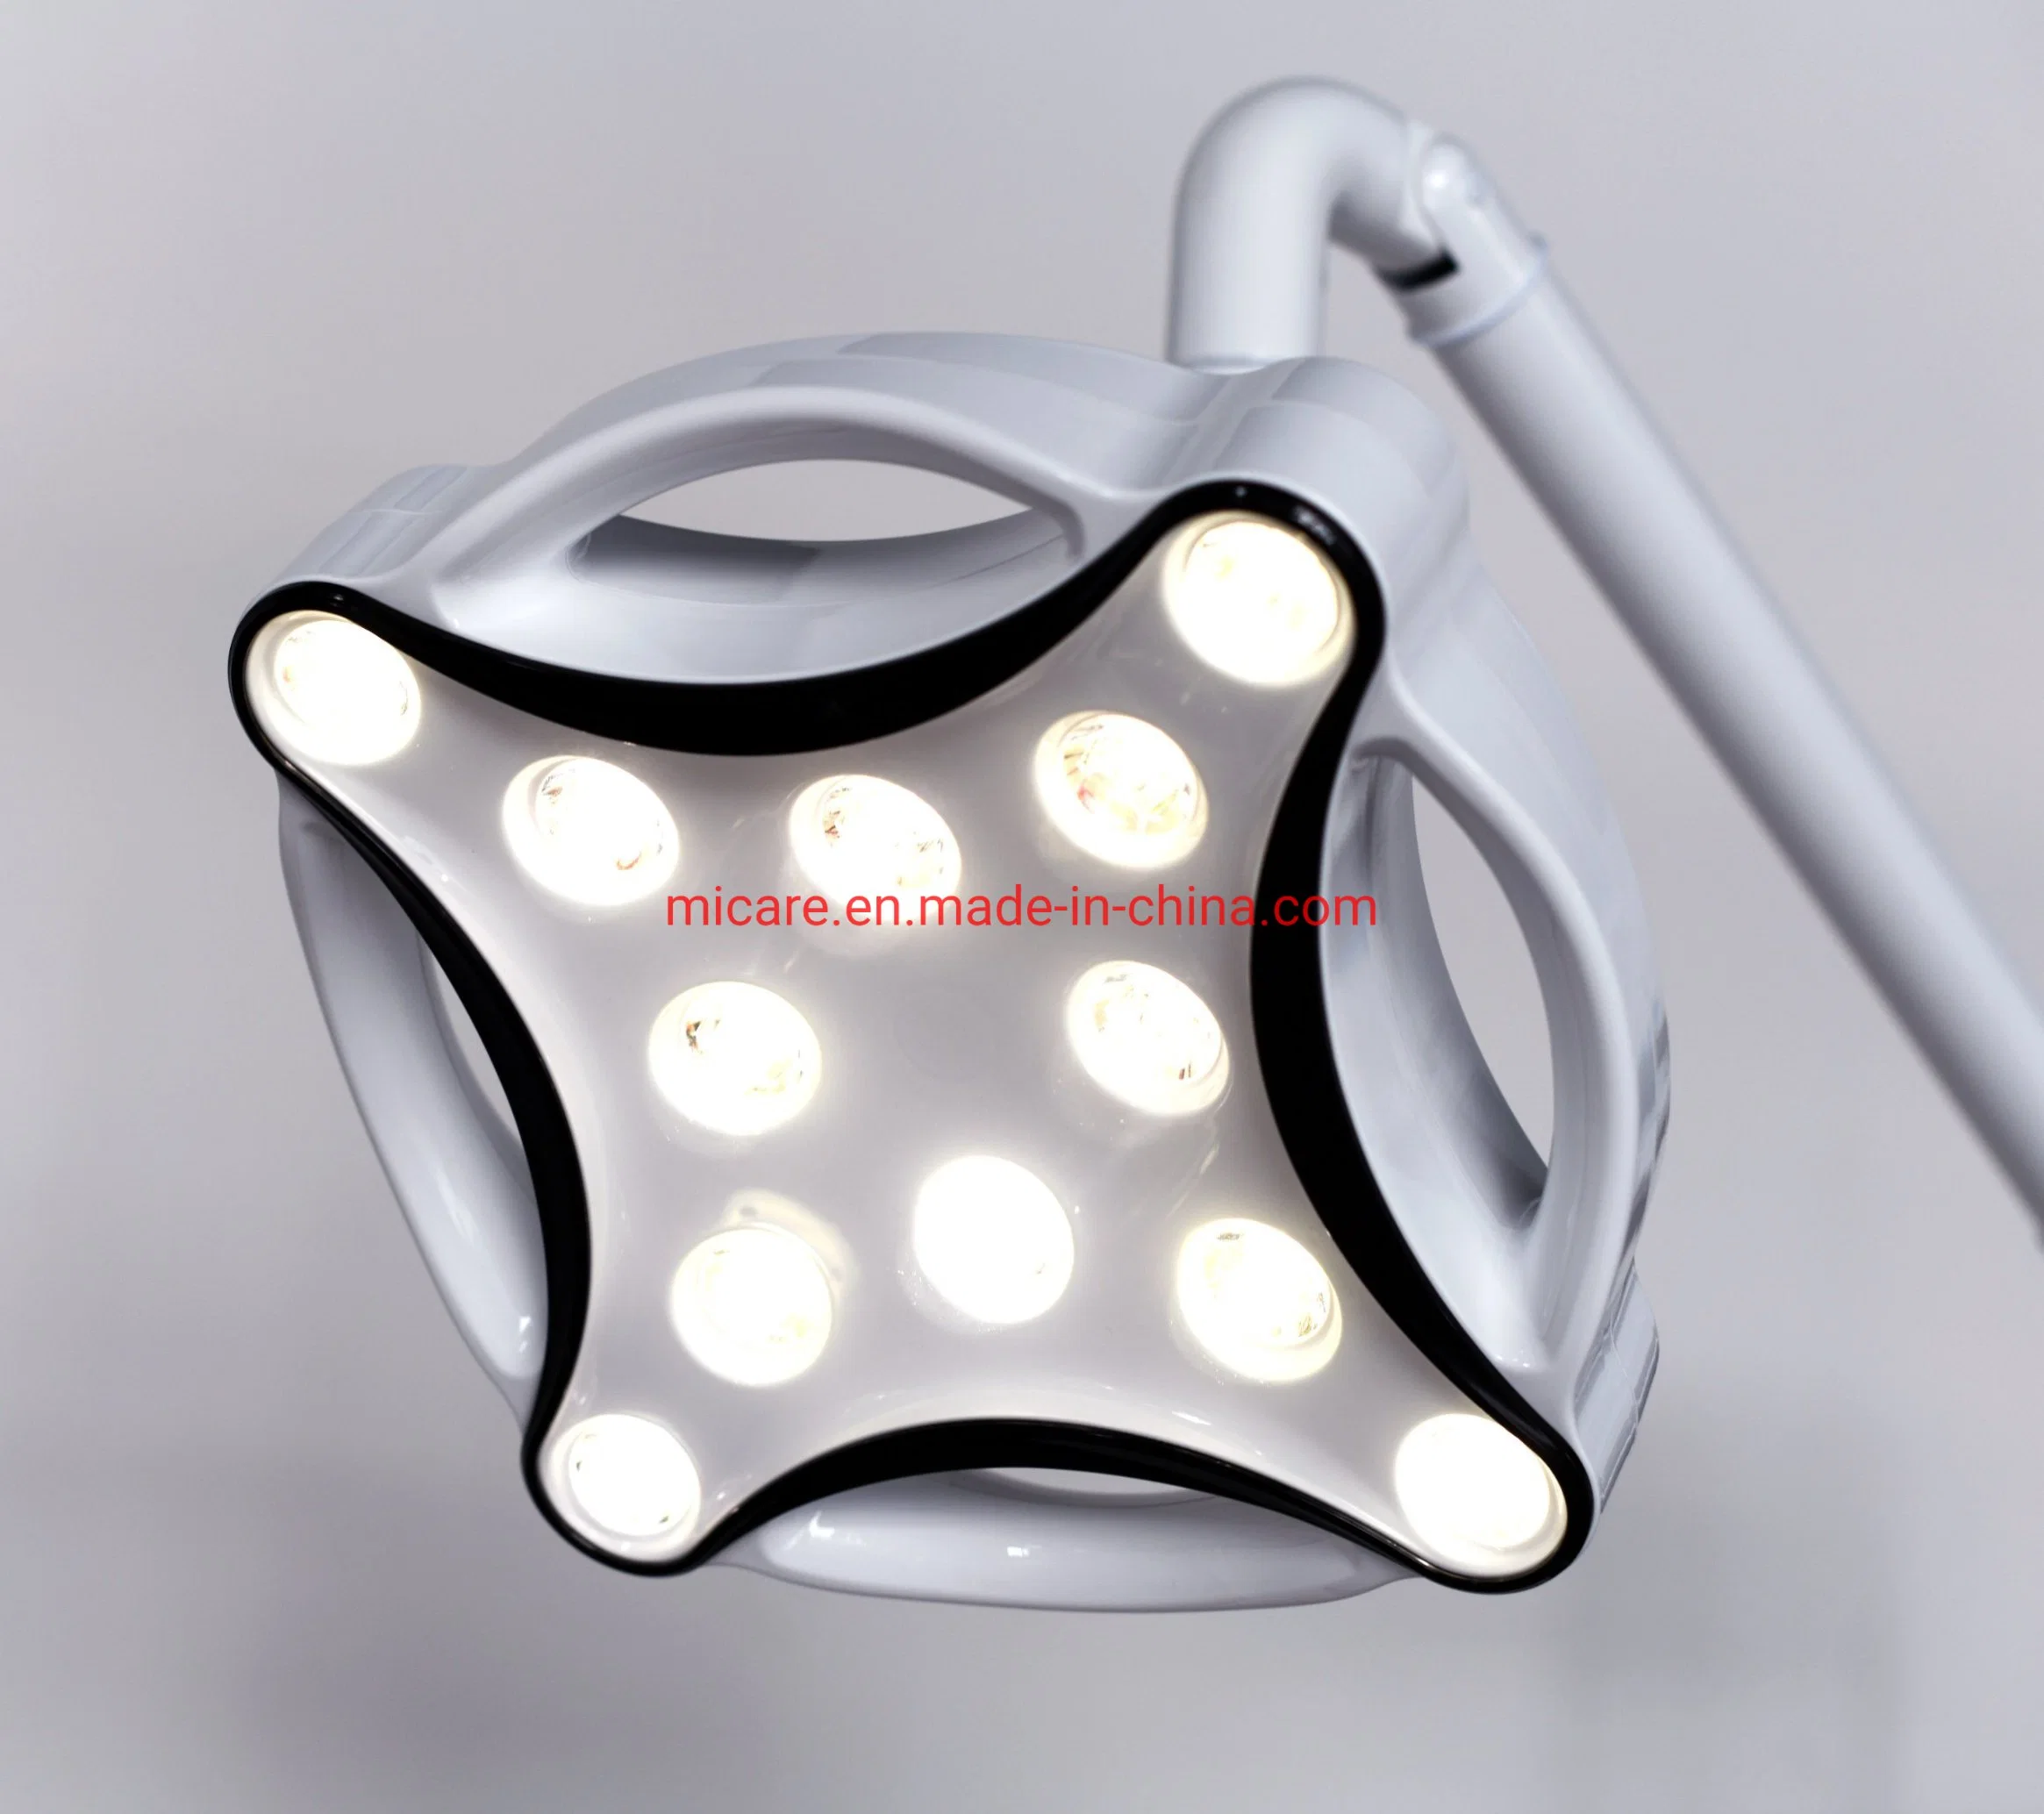 Jd1700 LED lámpara quirúrgica menor lámpara de operación de luz sin sombras